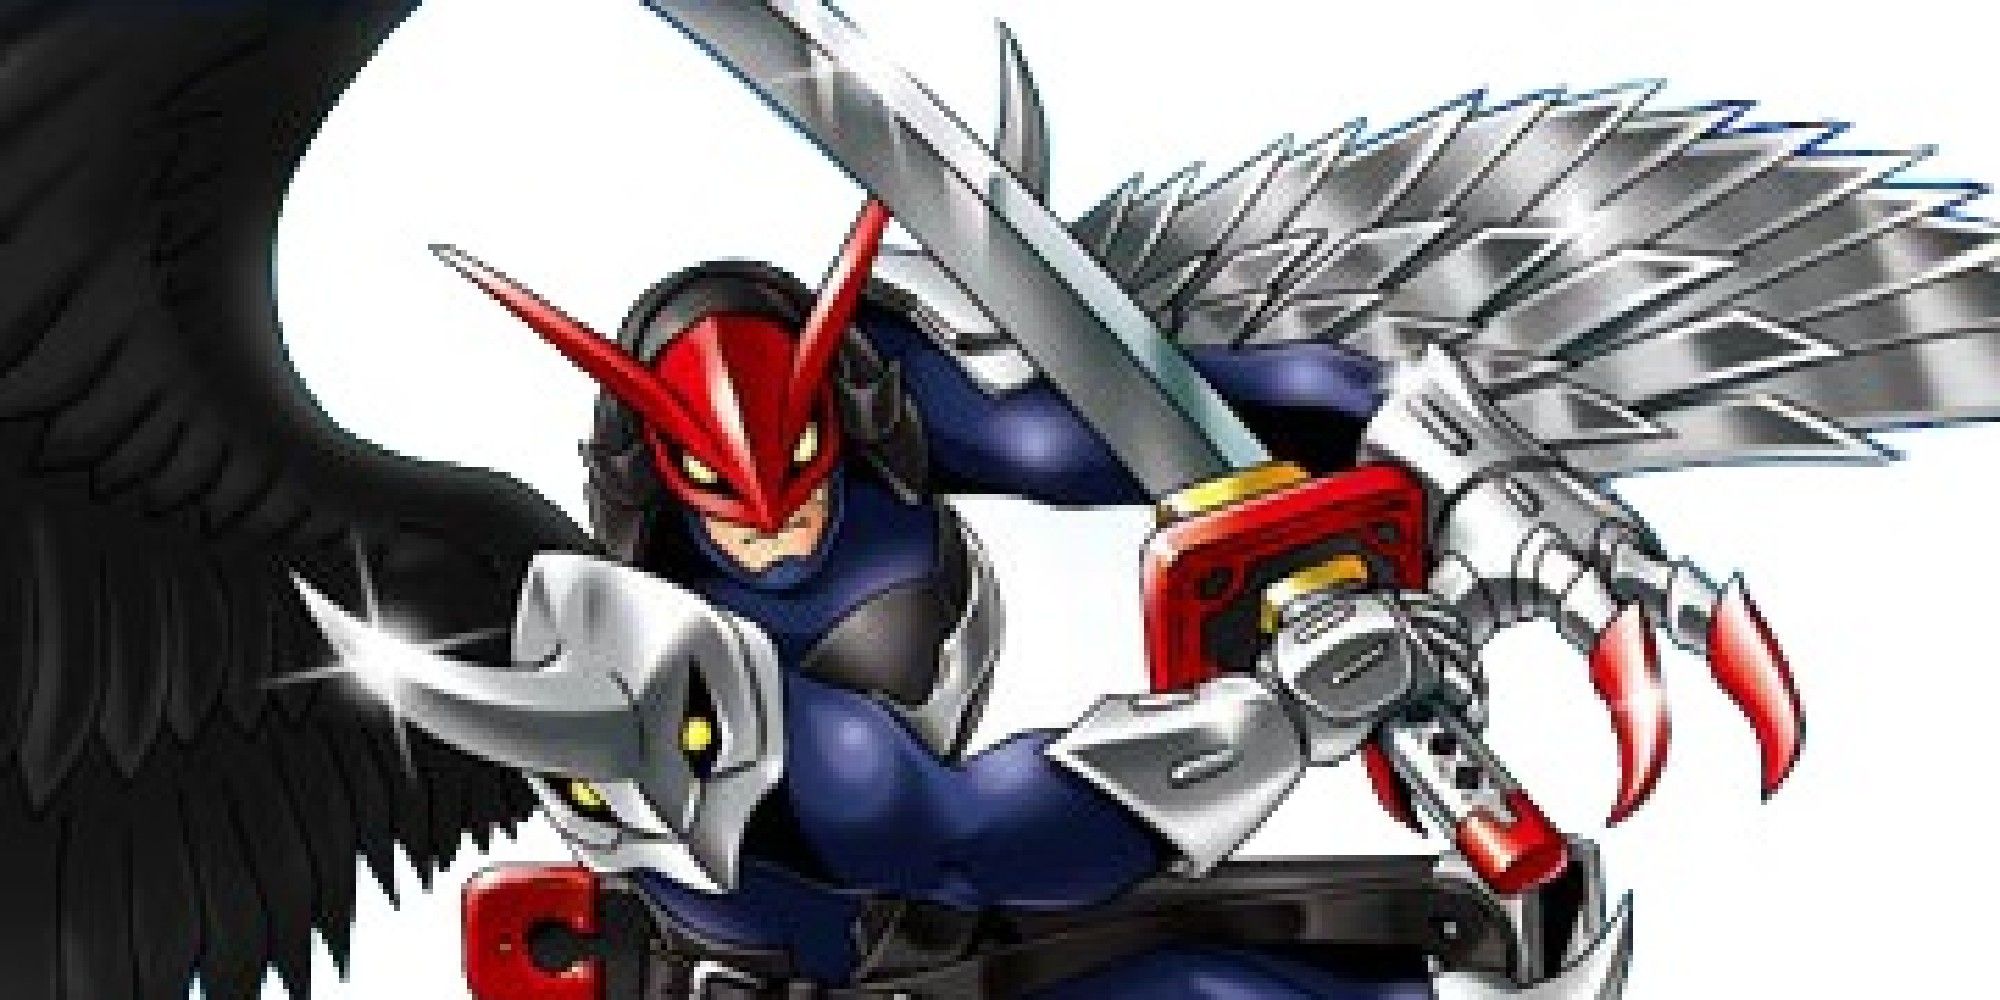 Digimon: The Silver Crow Ravemon